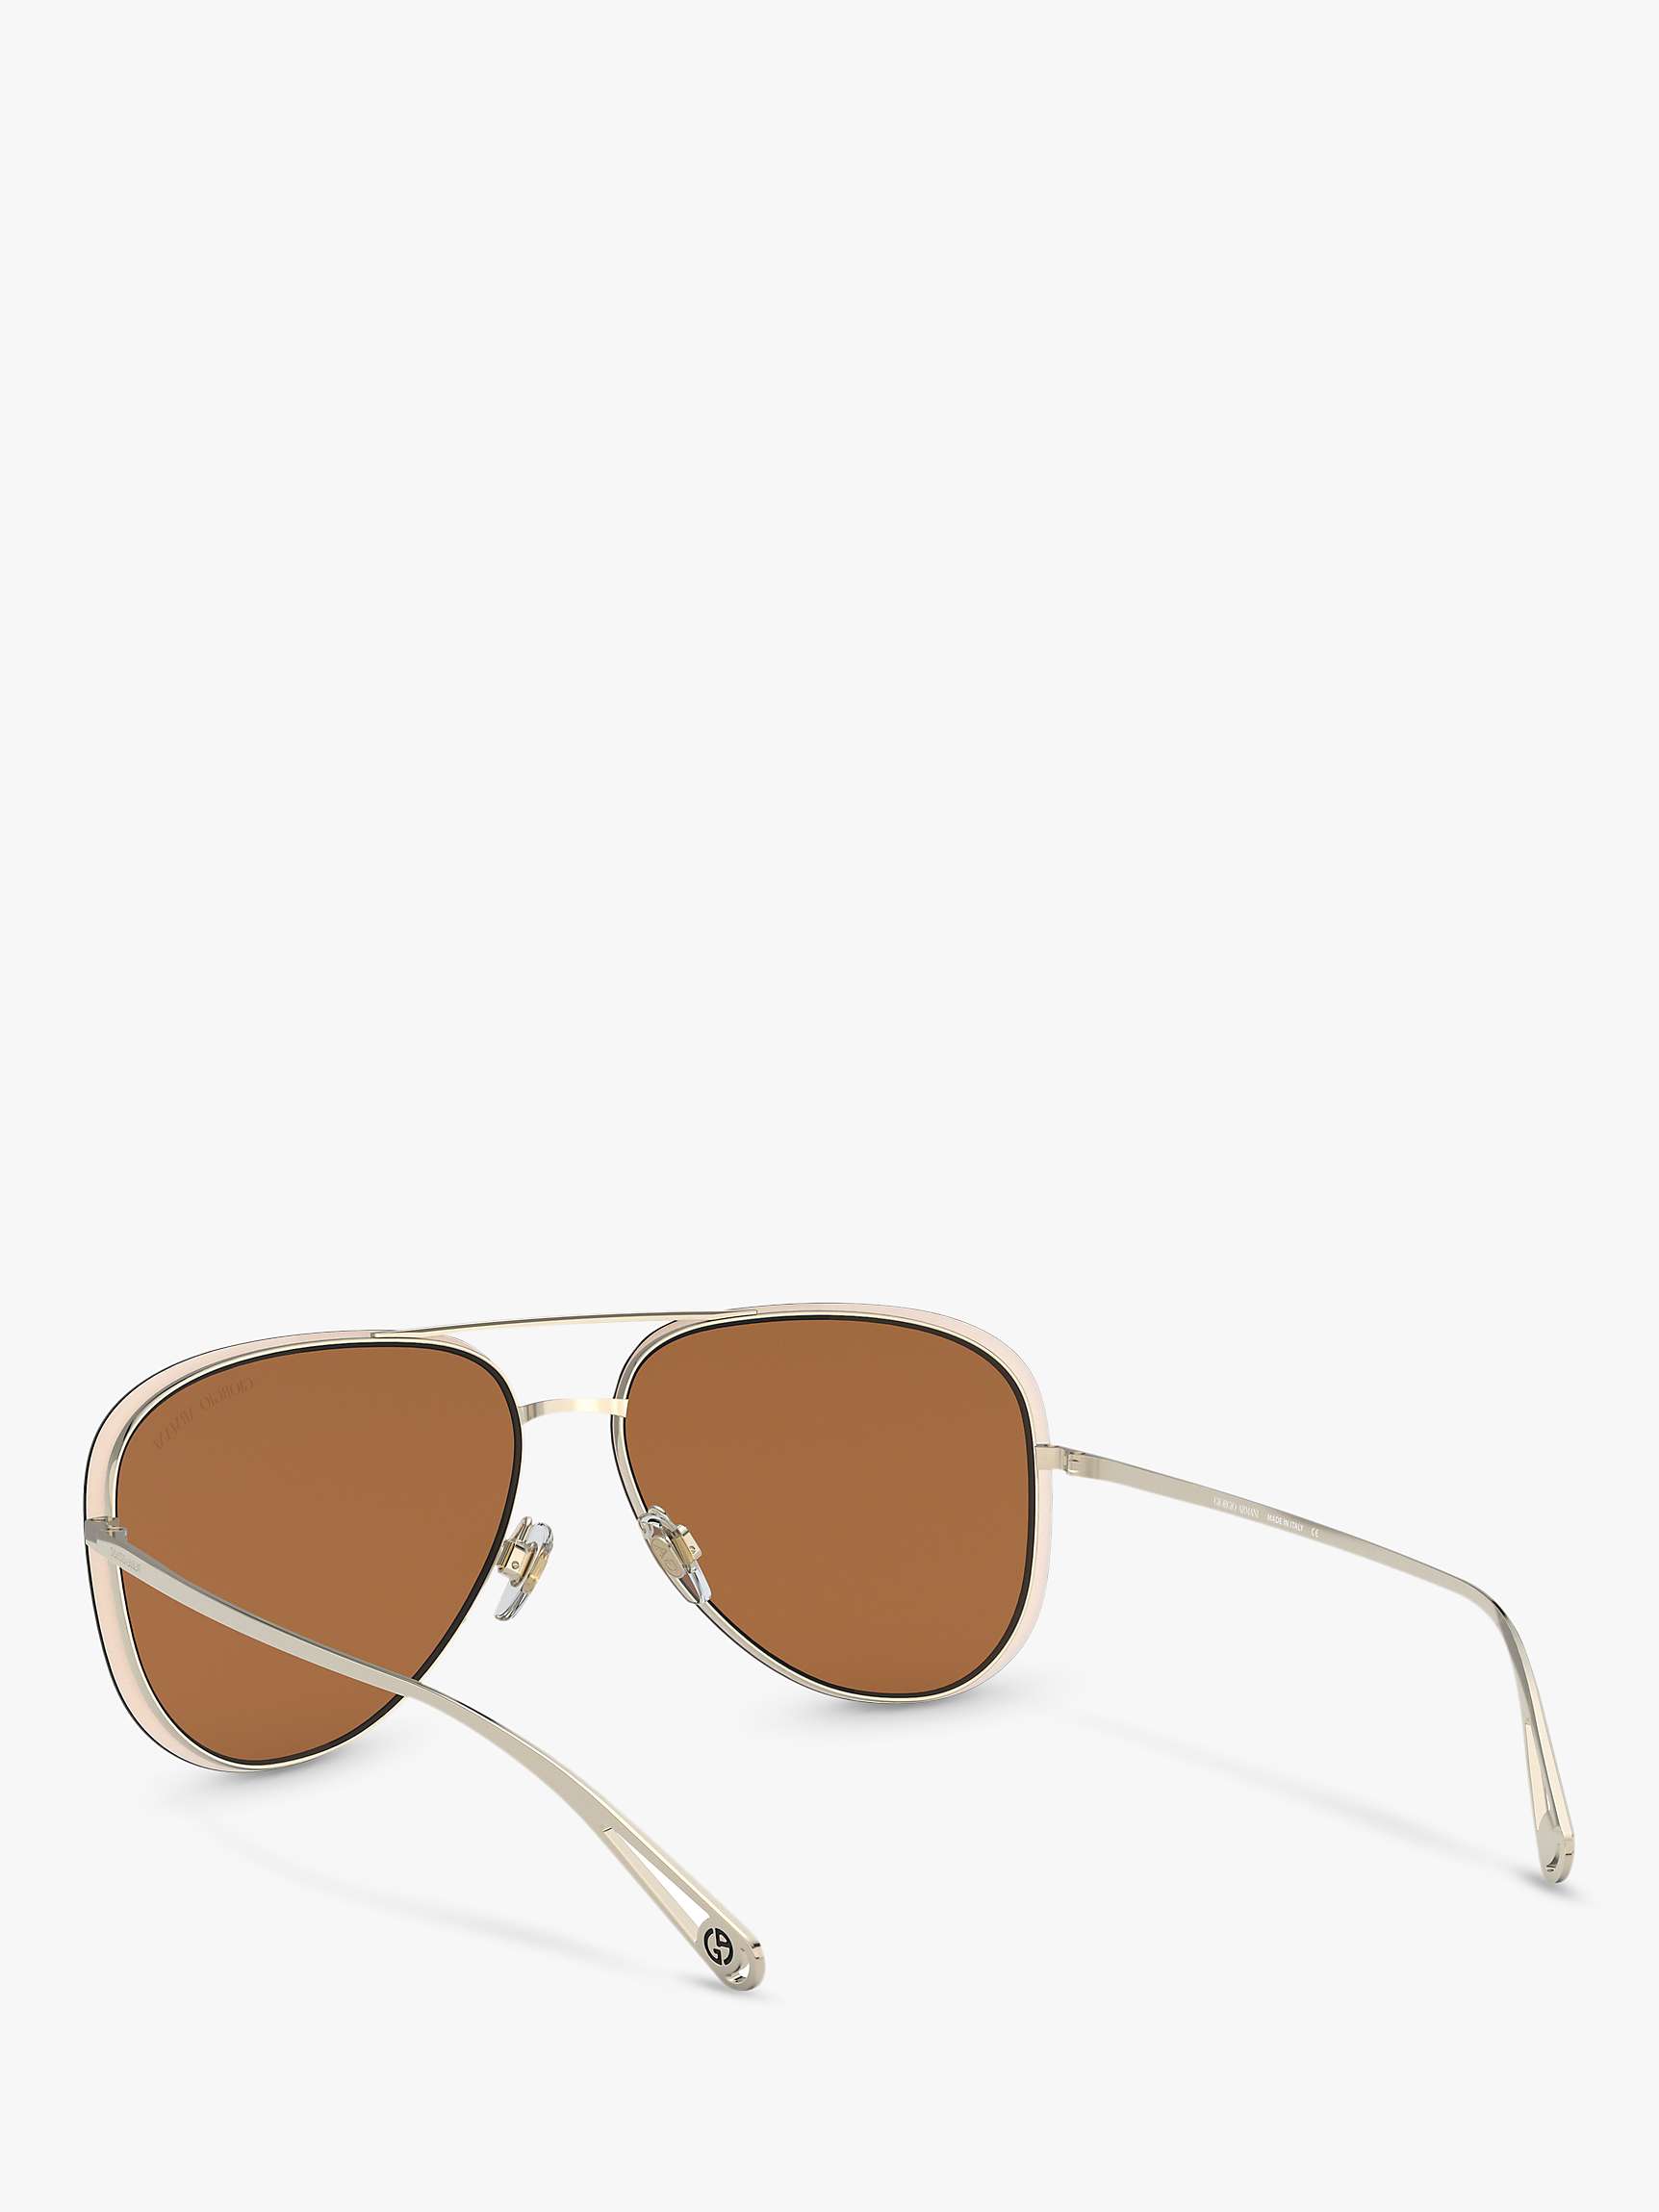 Buy Giorgio Armani AR6084 Women's Aviator Sunglasses Online at johnlewis.com